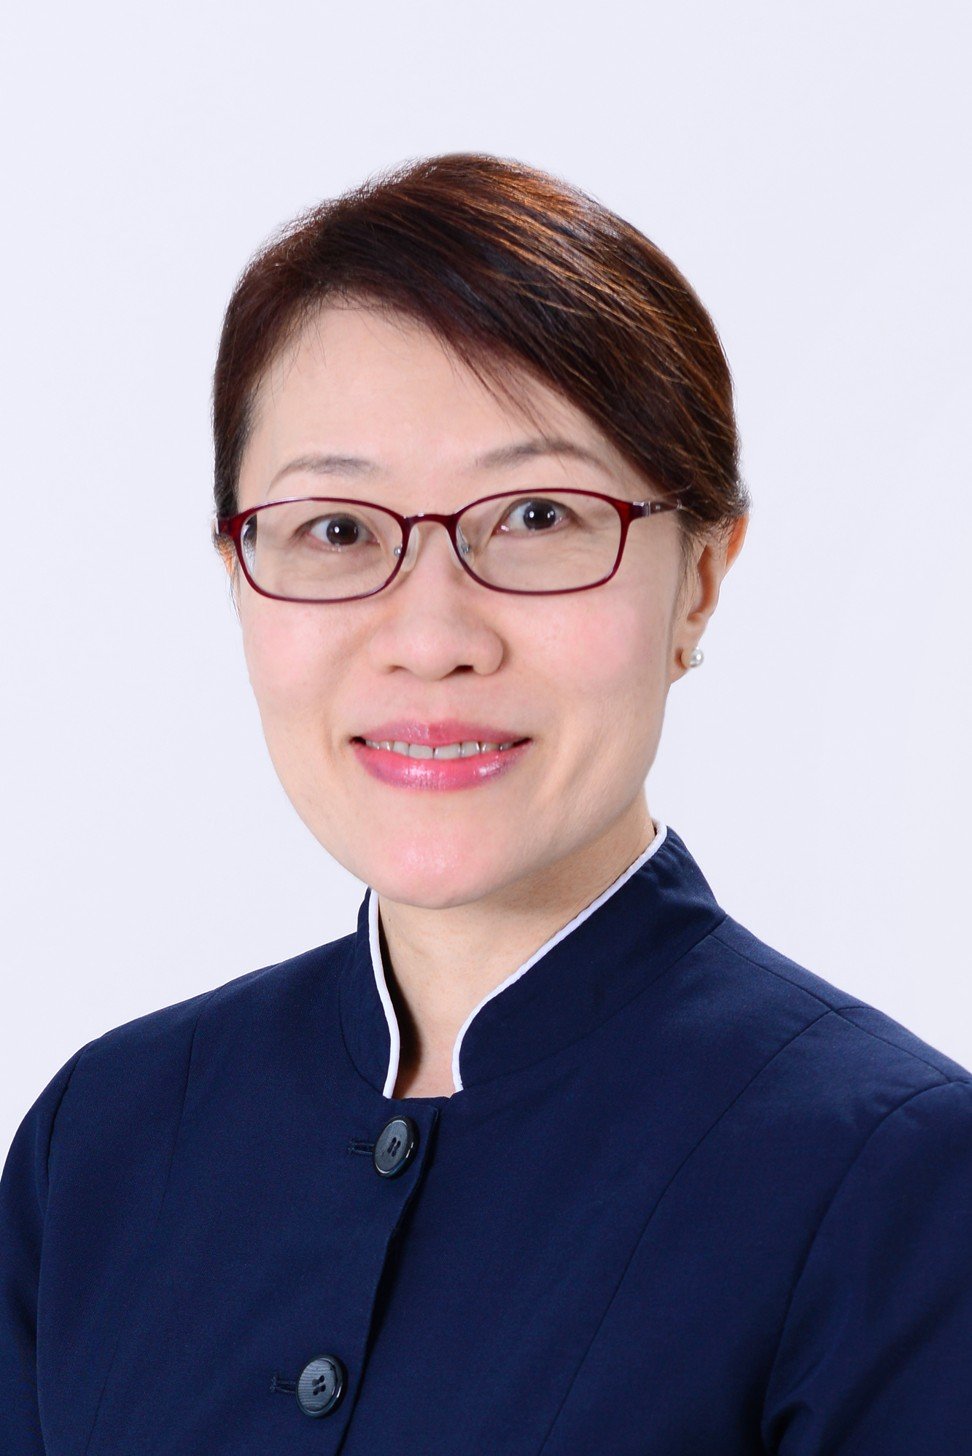 Karen Chong is a dietitian at Matilda International Hospital in Hong Kong.